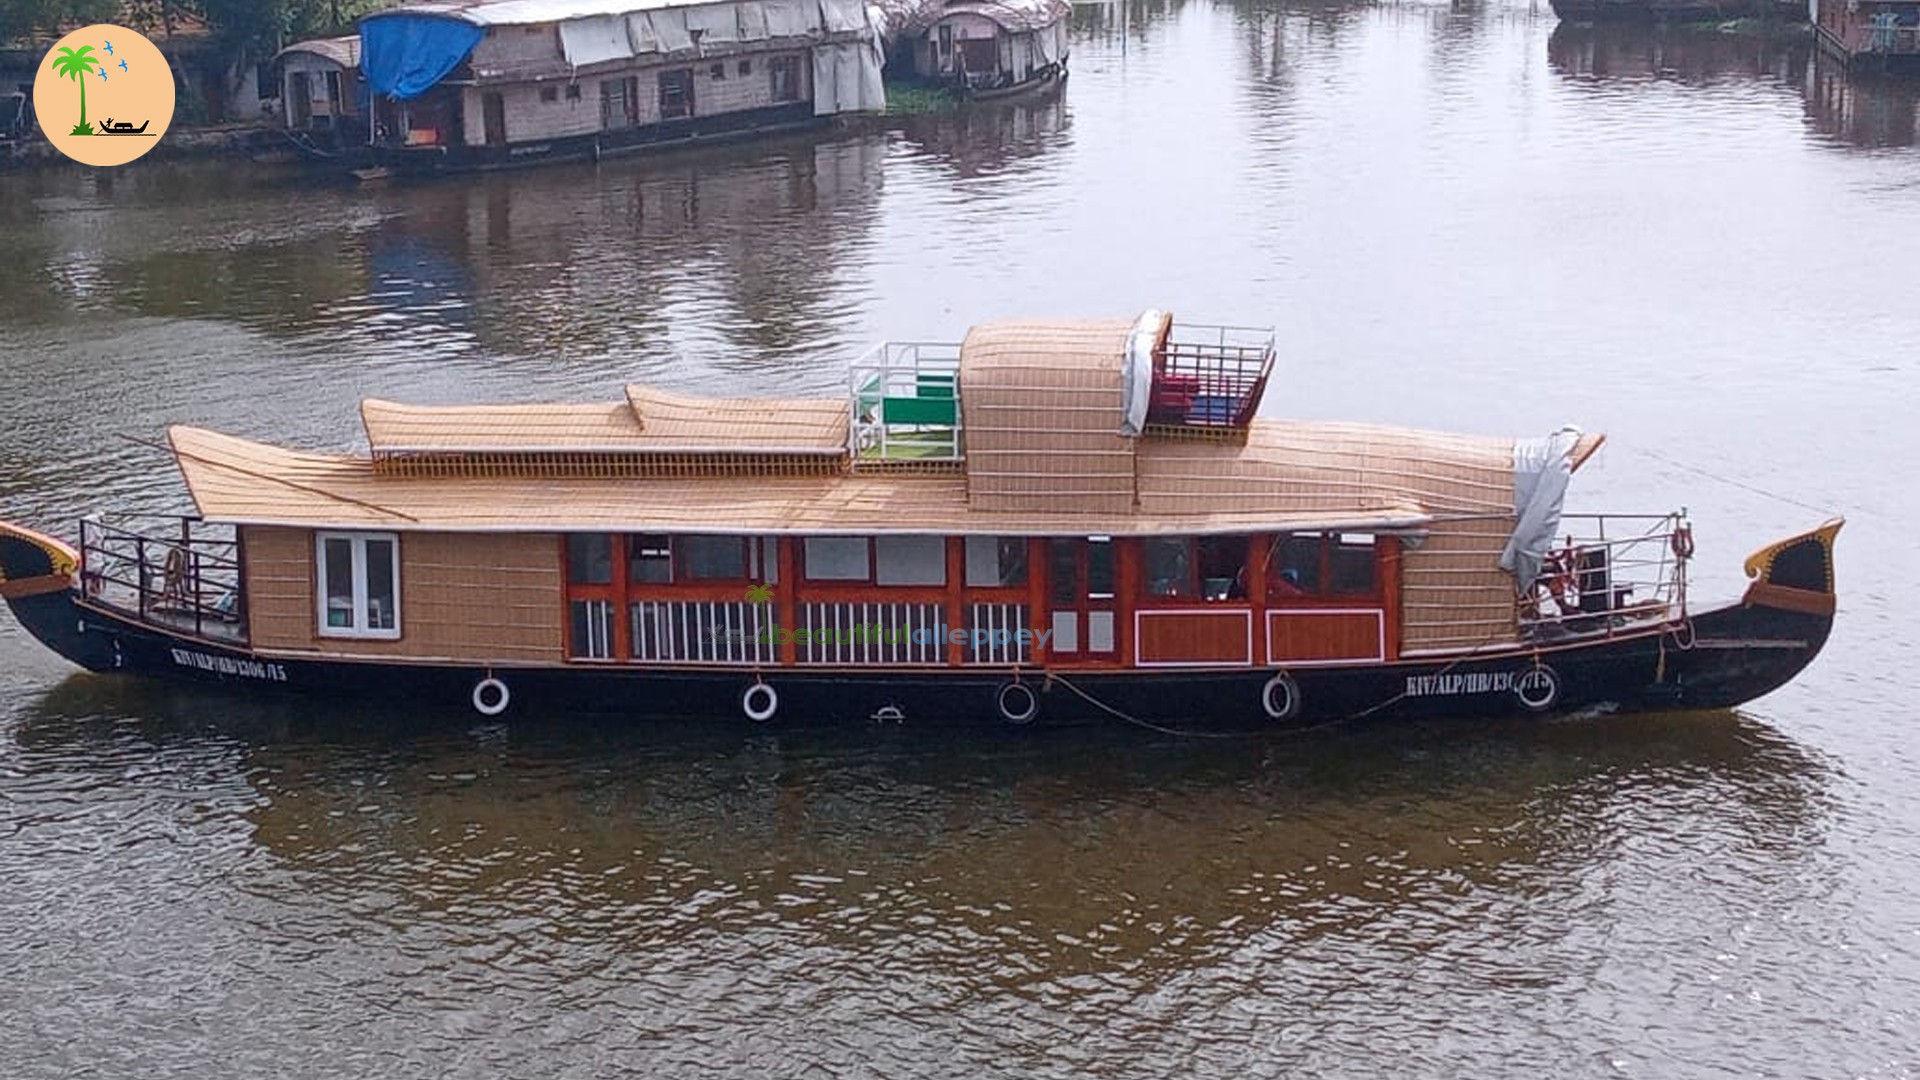 One Bedroom Deluxe Houseboat with Upper Deck Hbcode: BGR01